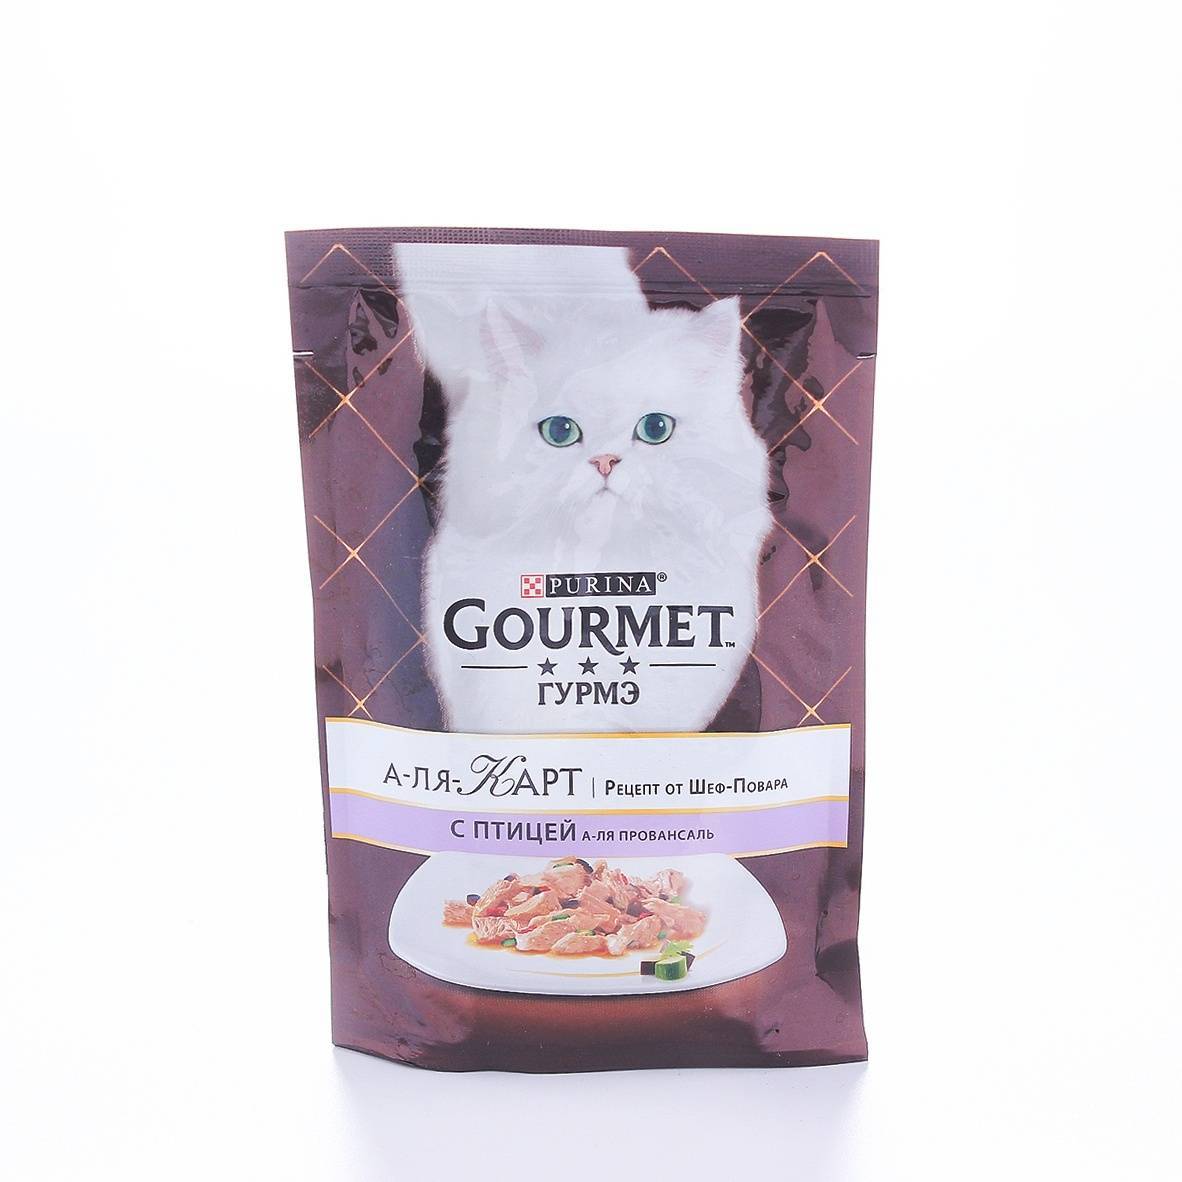 Обзор кошачьего корма gourmet с рекомендациями по кормлению